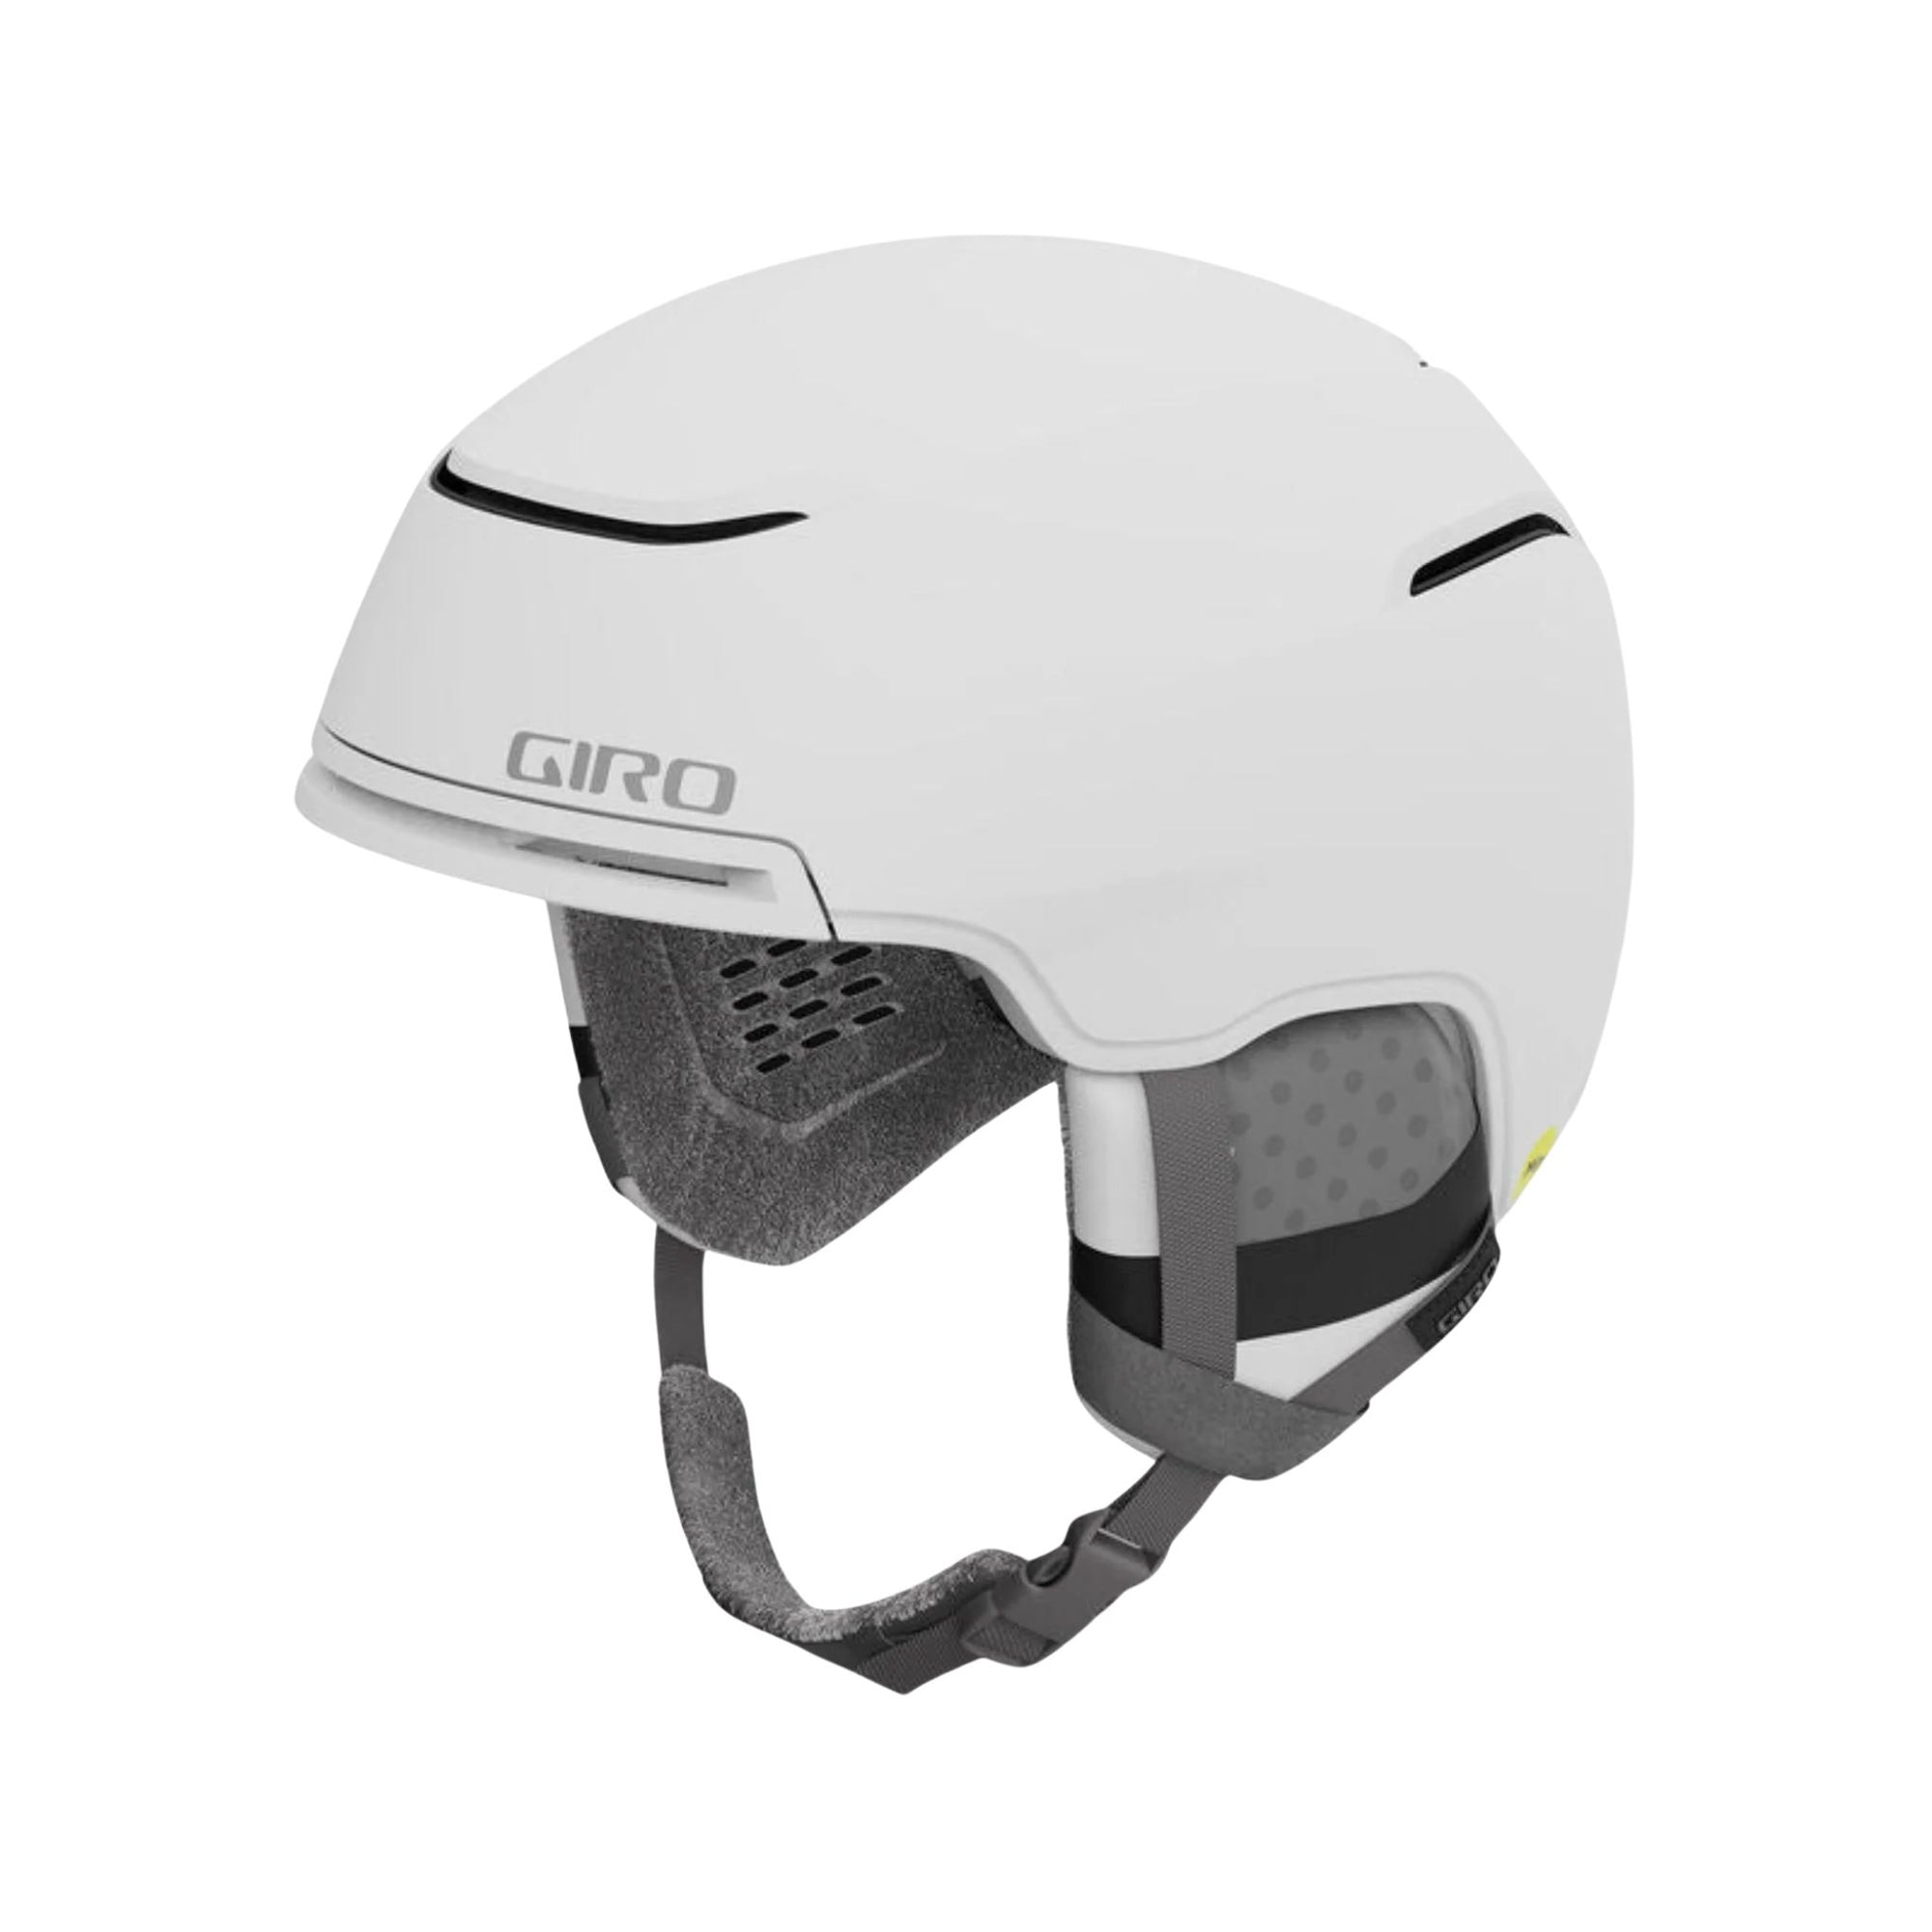 Womens Giro Terra MIPS Helmet - Matte White Helmets Giro S - (52cm - 55.5cm) 